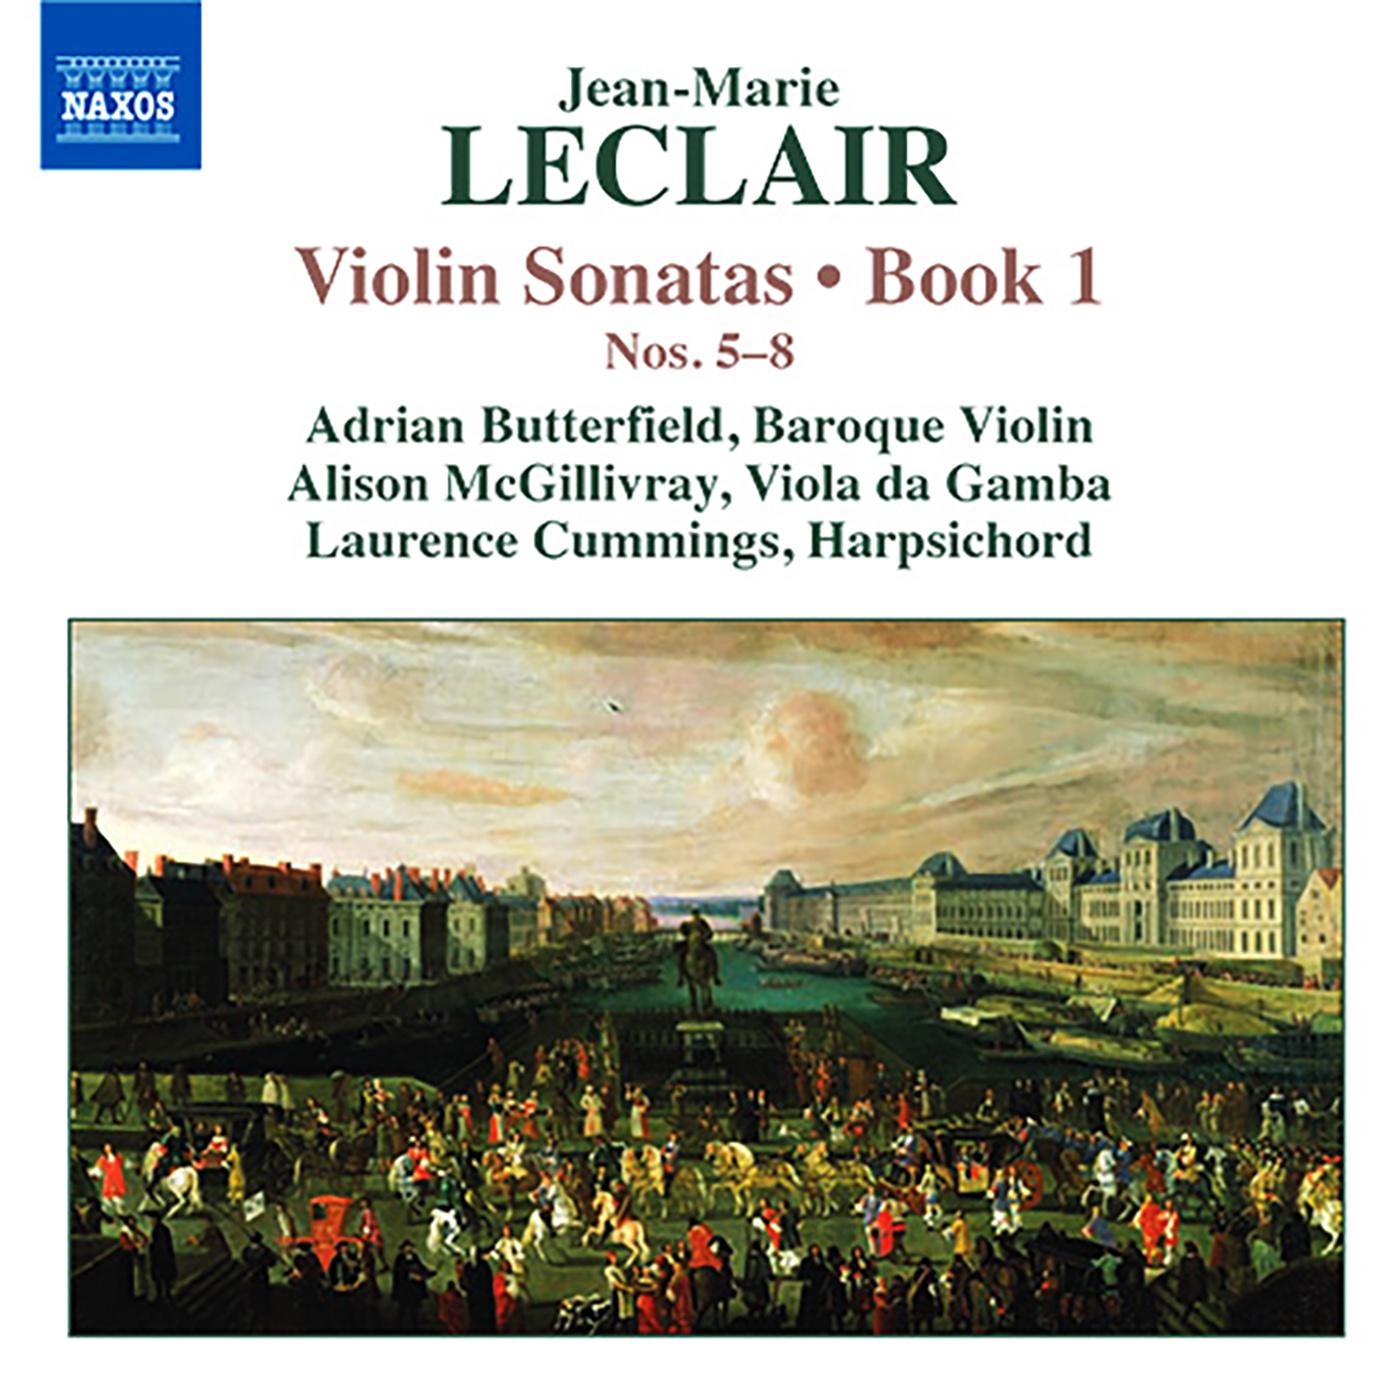 Violin Sonata in F Major, Op. 1, No. 7:III. Aria: Grazioso